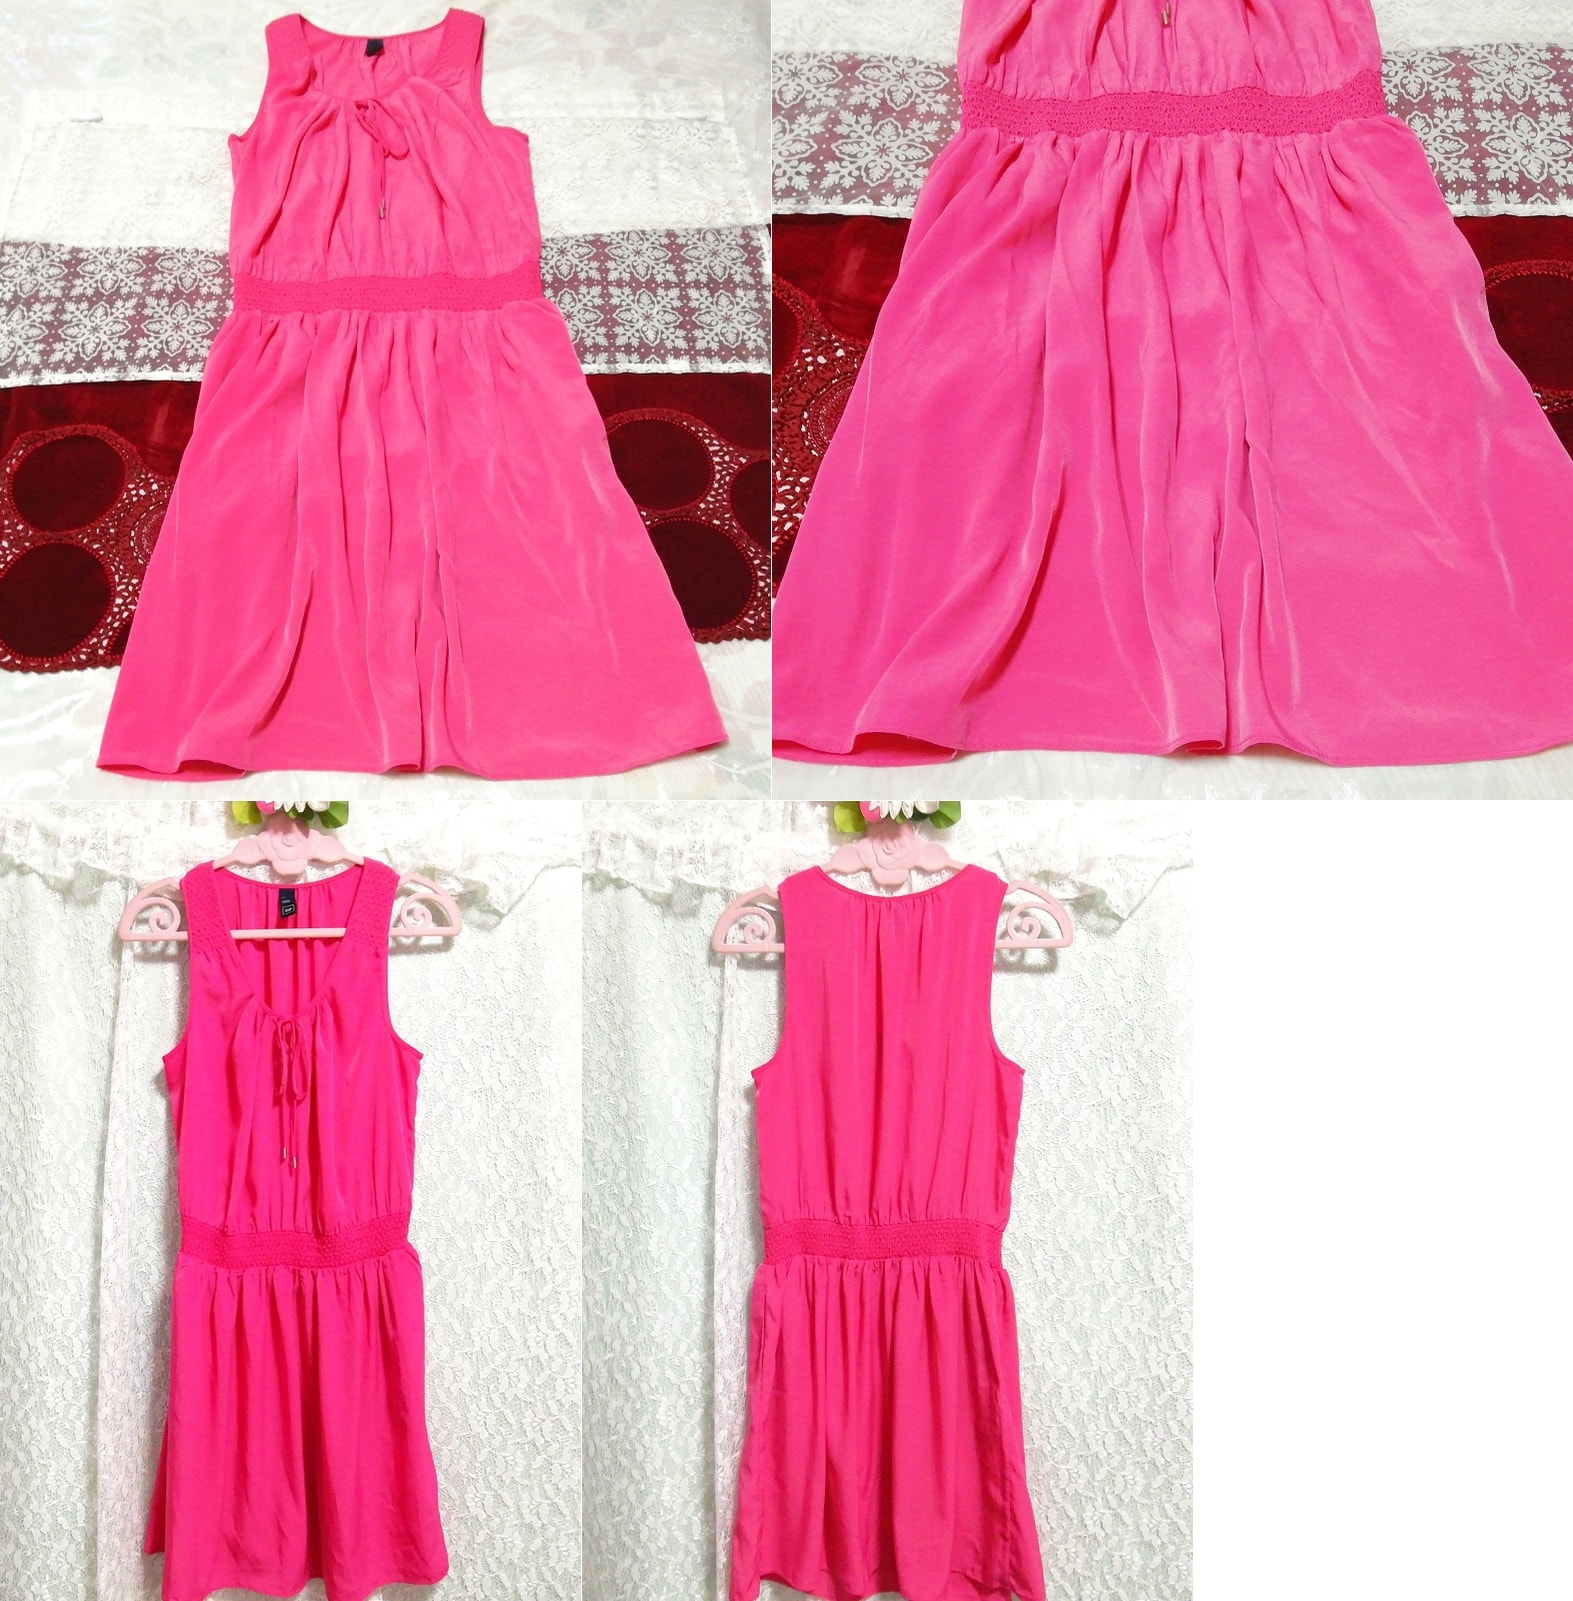 ثوب نوم من الشيفون الوردي الفلورسنت بدون أكمام نصف فستان, تنورة بطول الركبة, حجم م